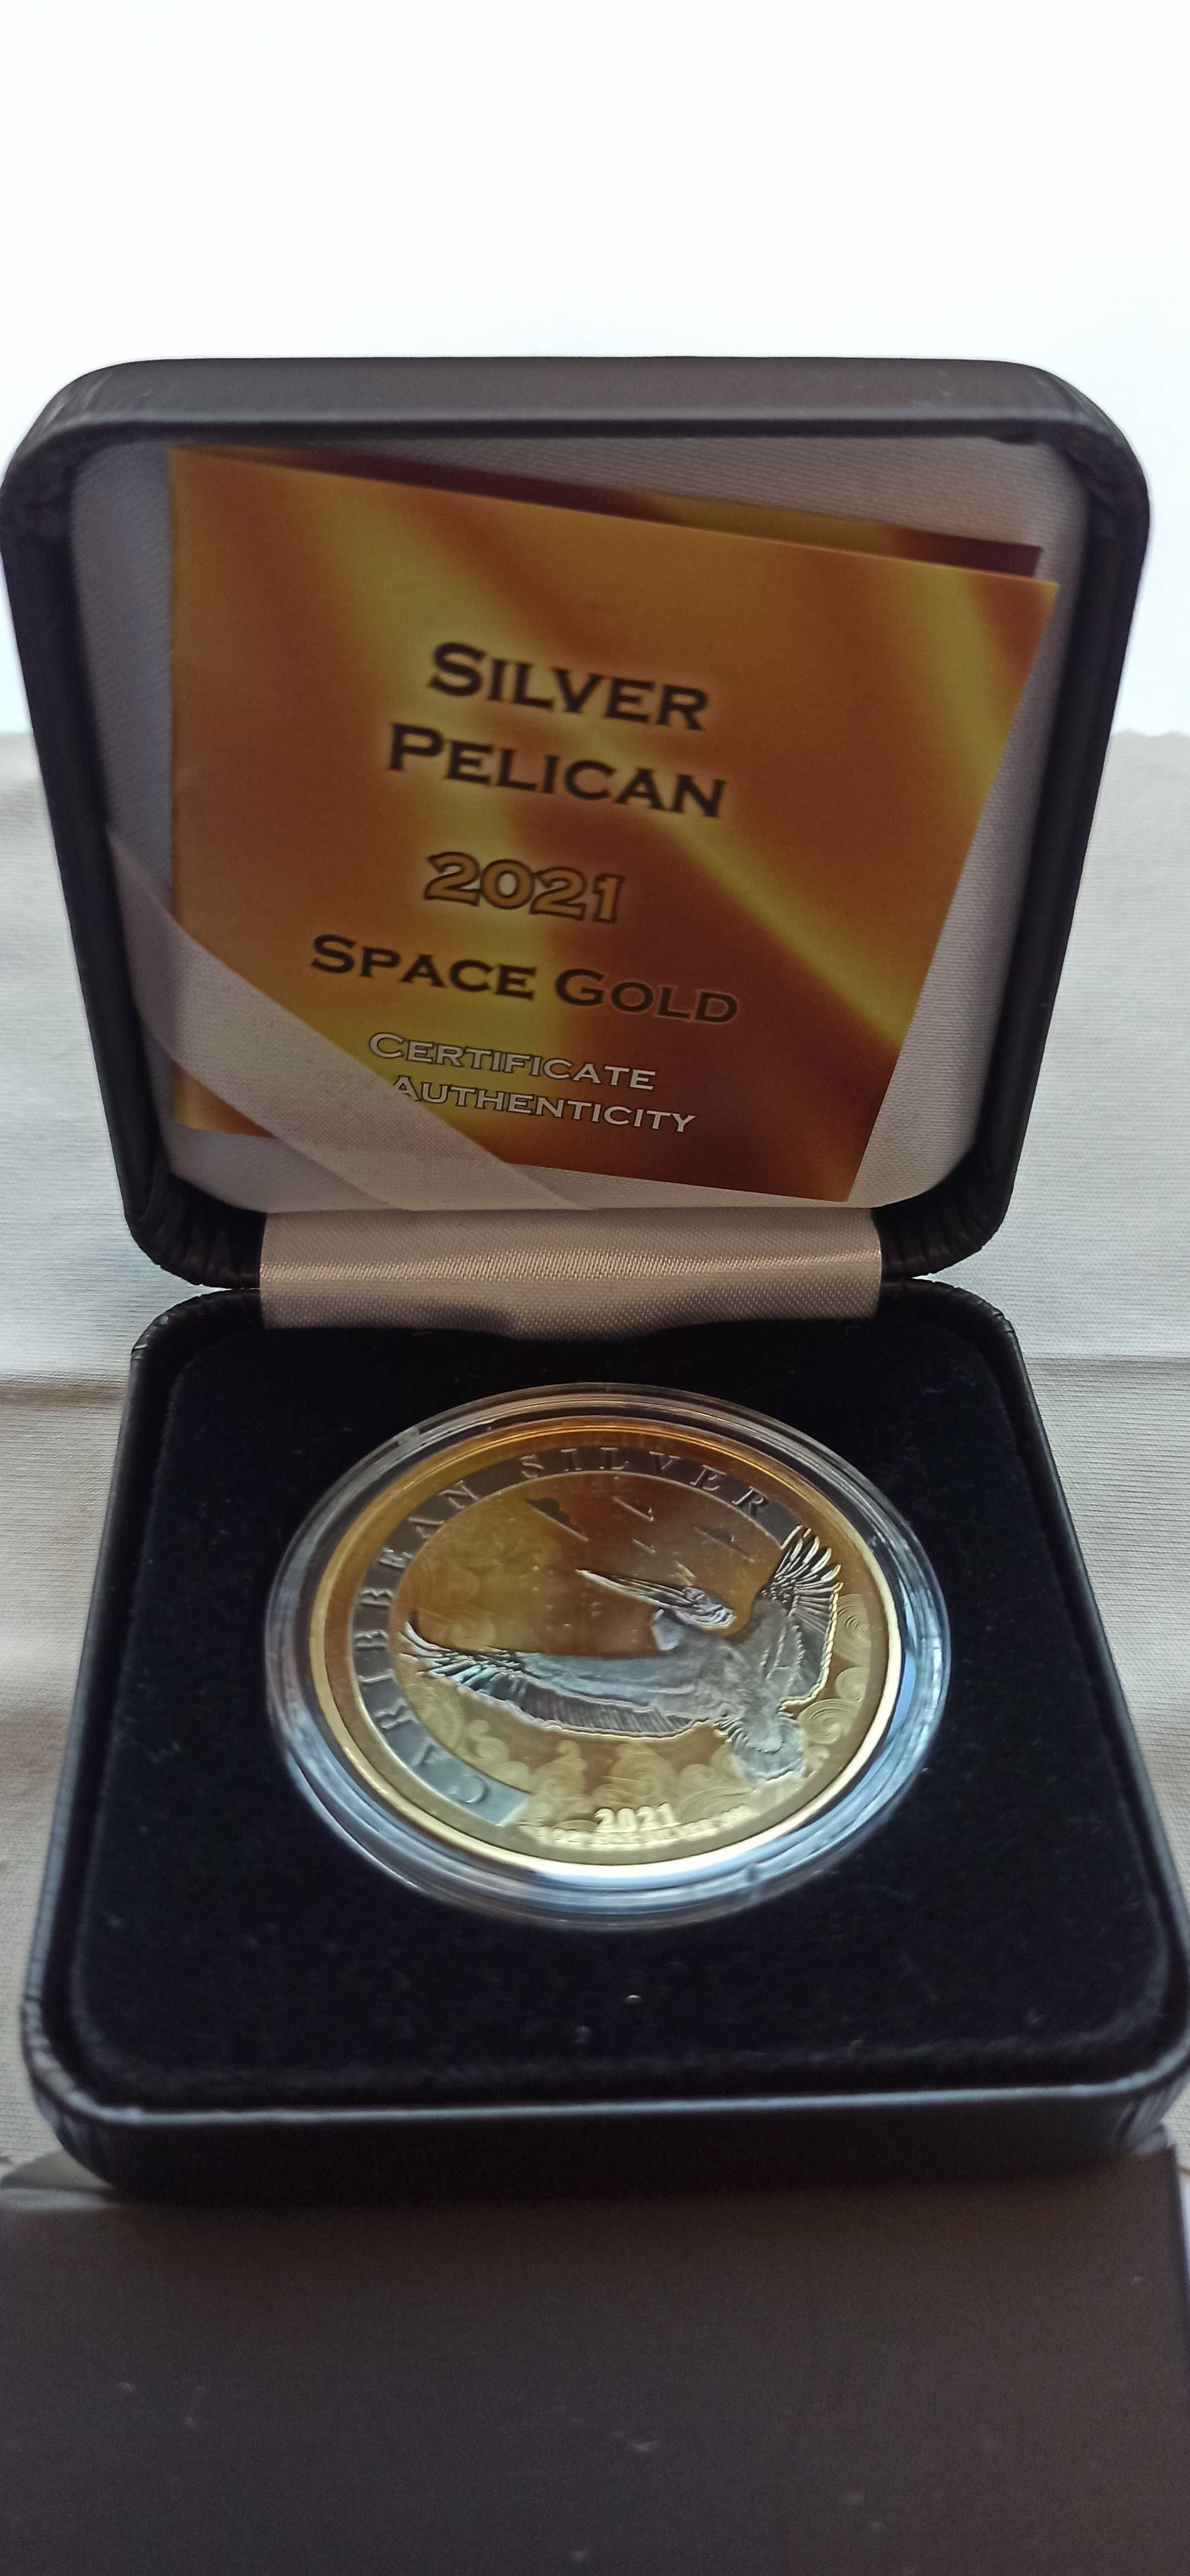 Prata Fina 999% Barbados 1 Dollar 2021 Caribbean Silver Pekican Gold